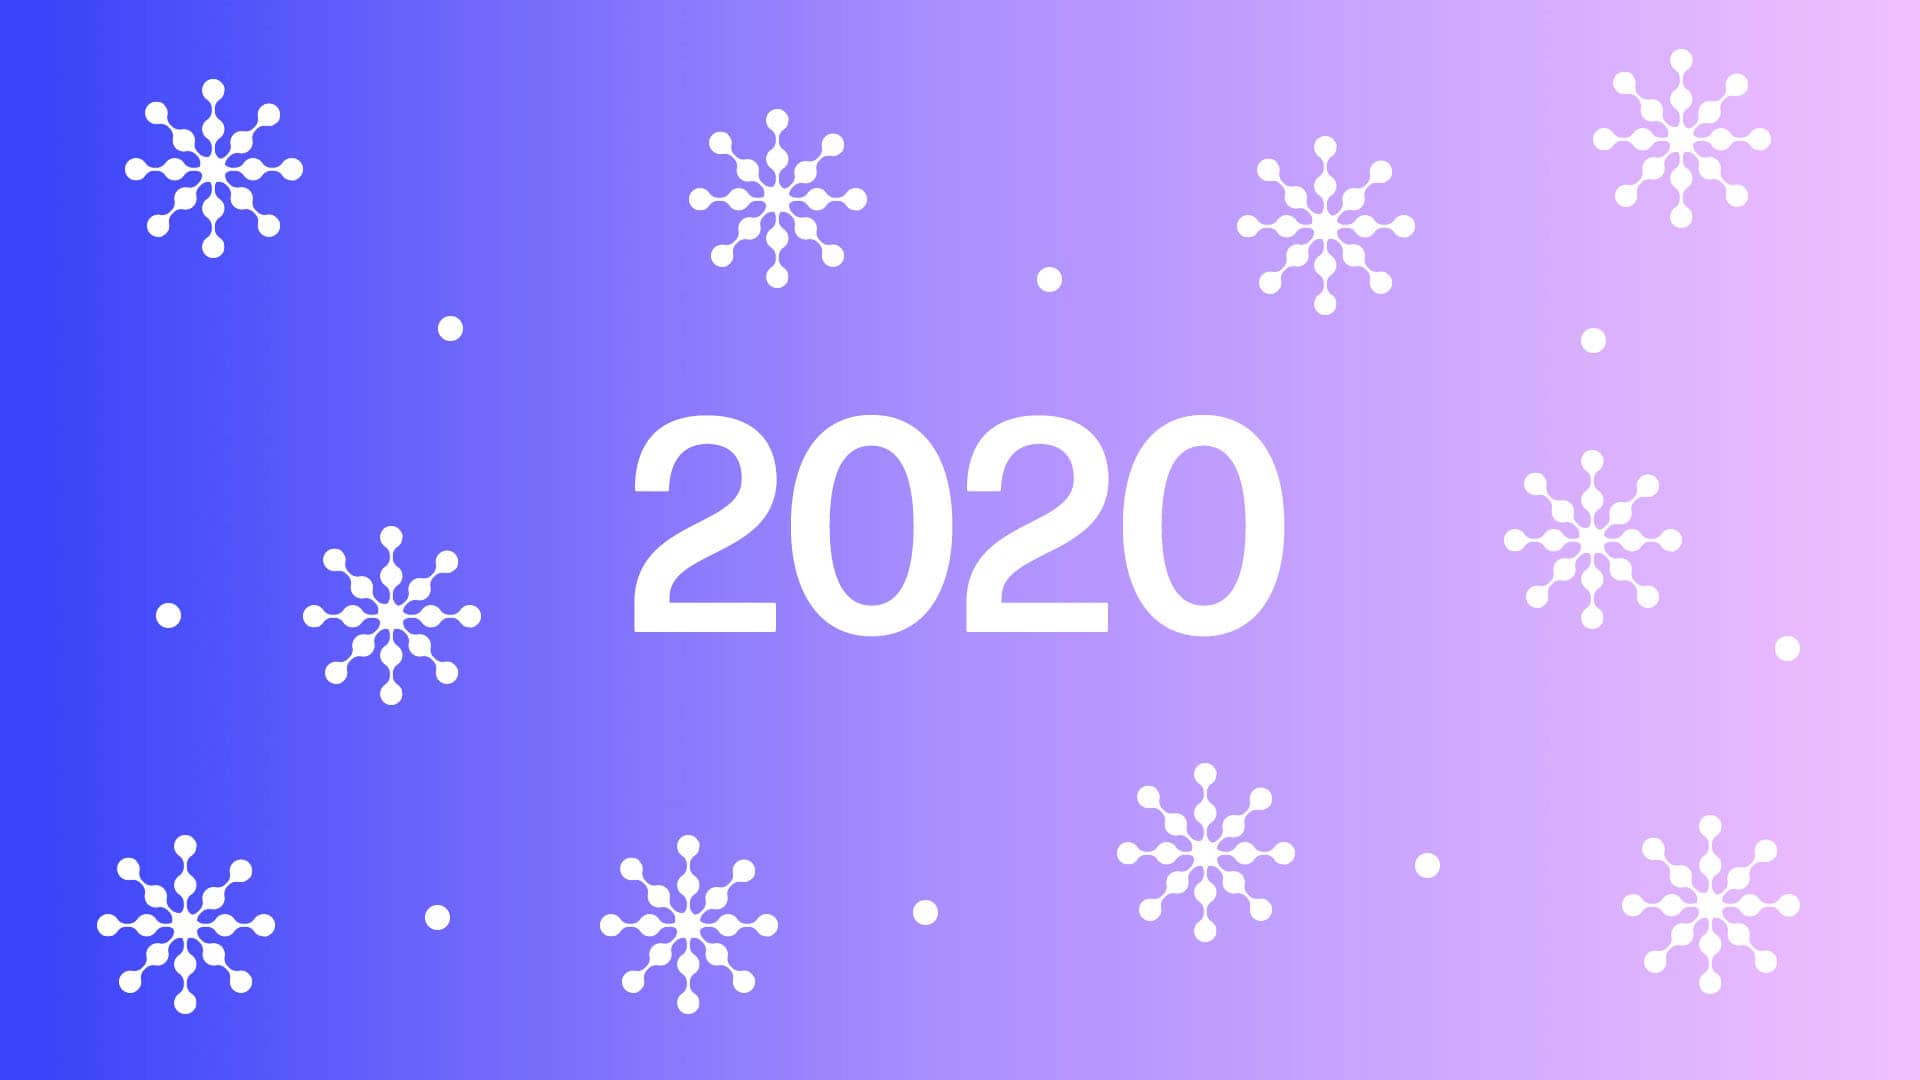 2020 achievements